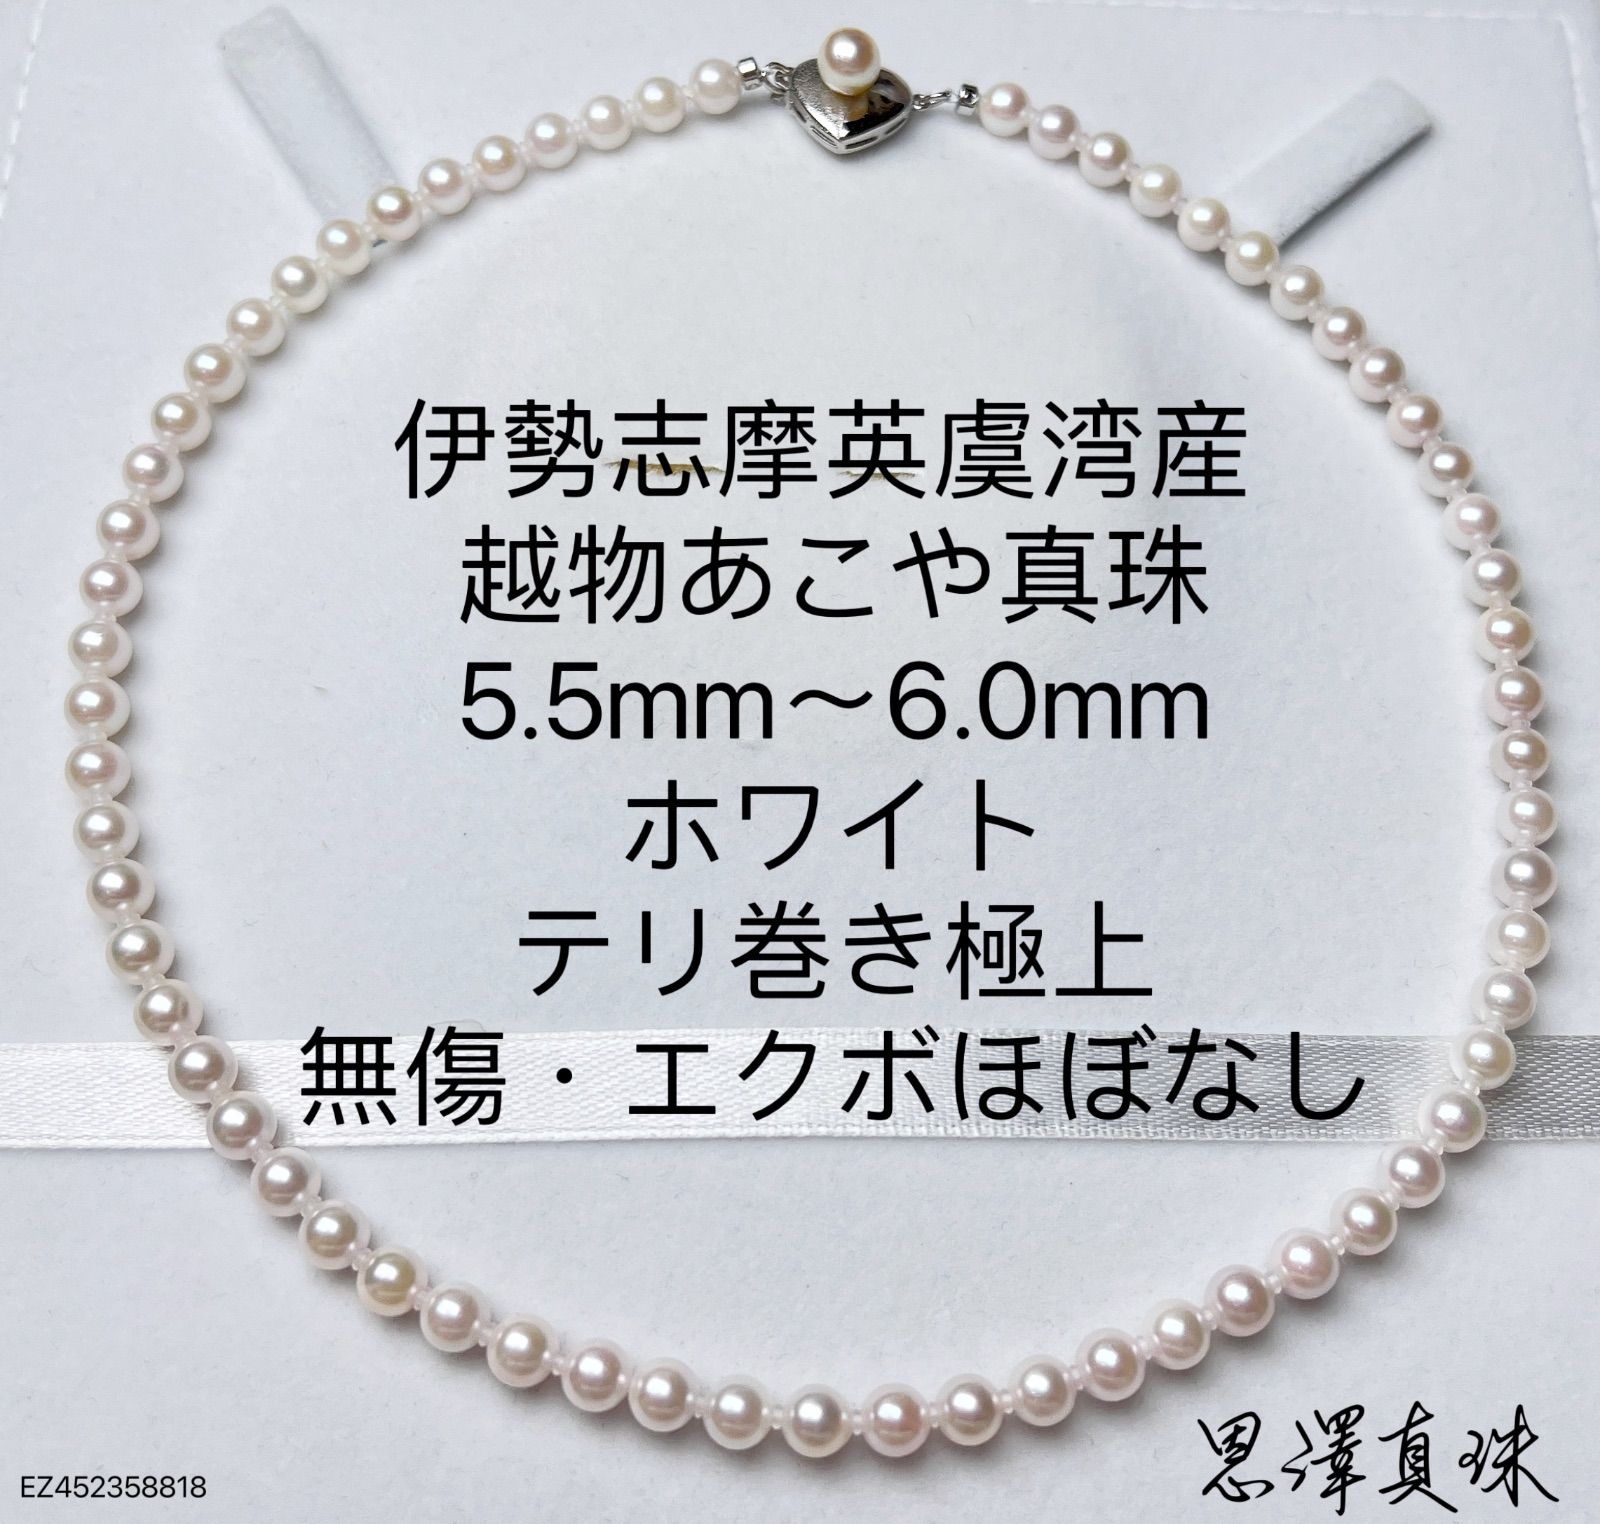 日本製伊勢志摩英虞湾産お越し物あこや真珠無調色大珠9.4mm シャンパンゴールド傷ほぼなし